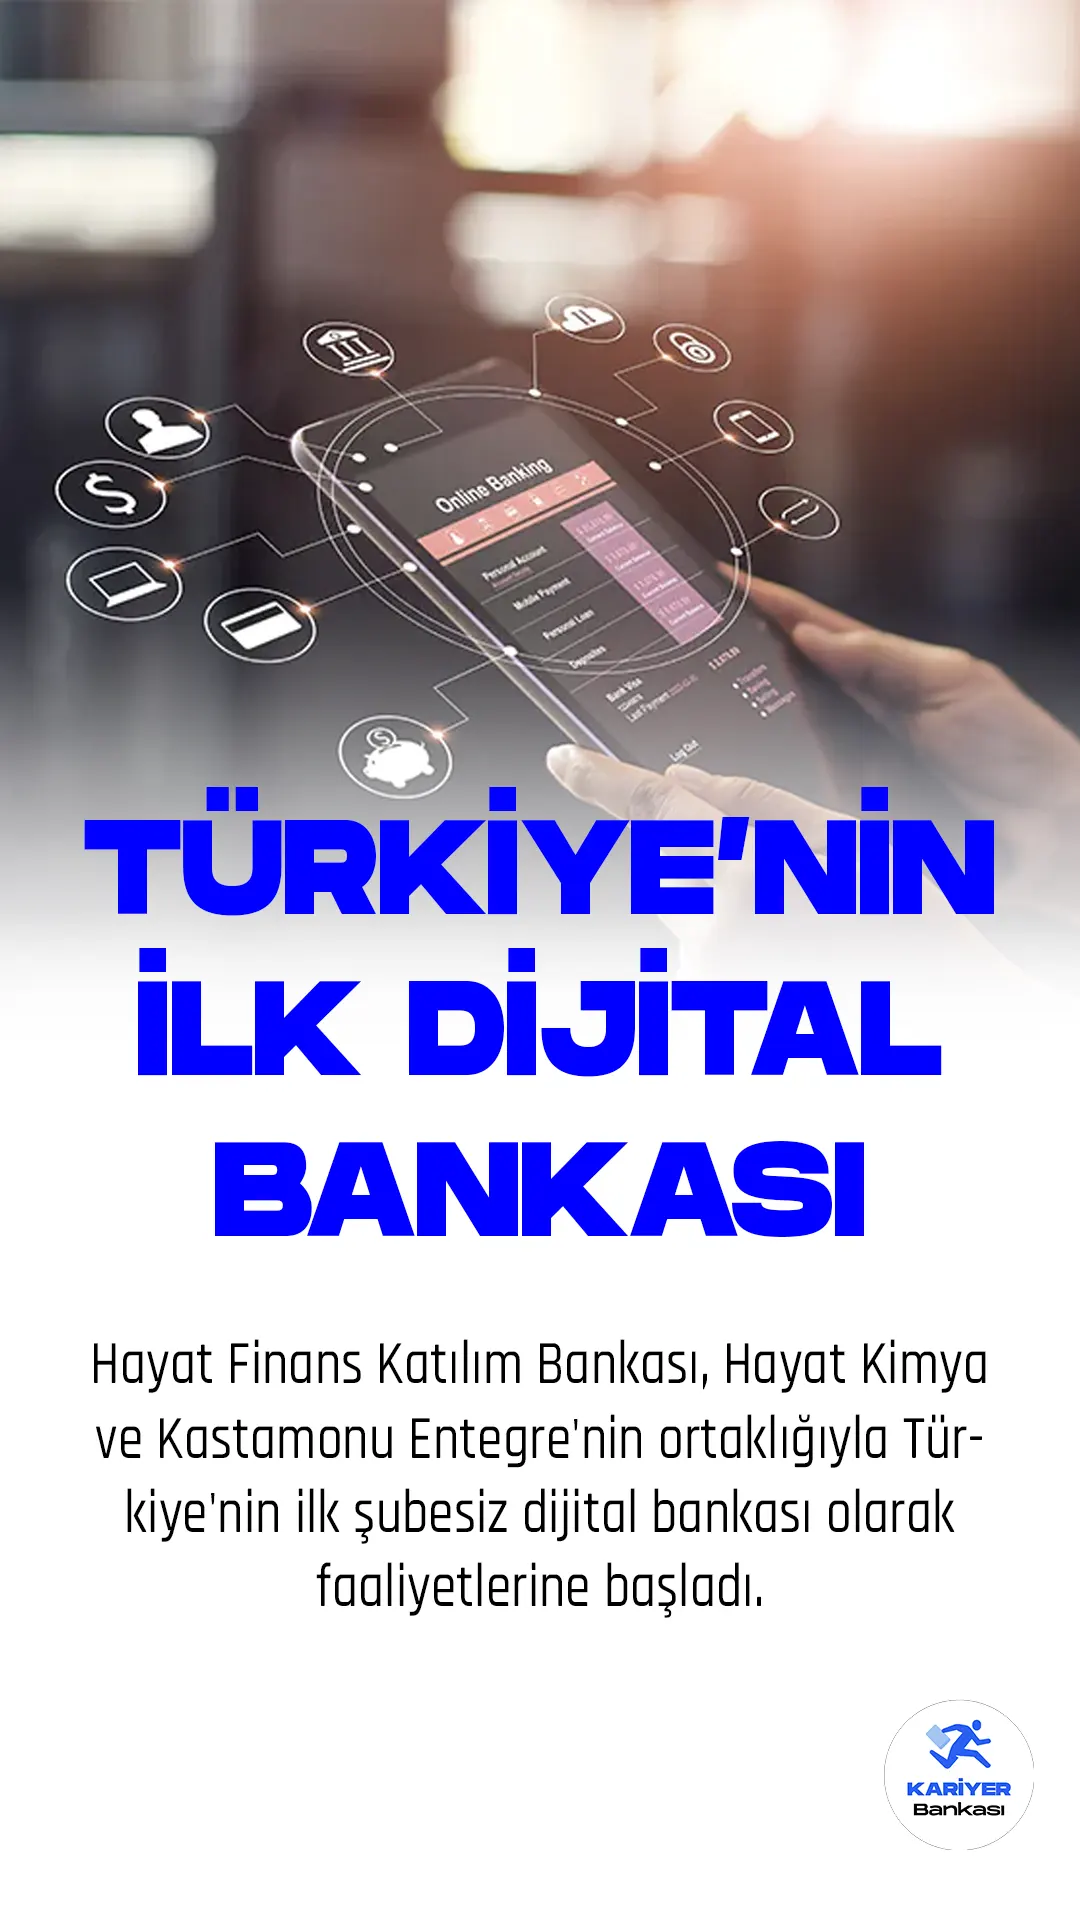 Hayat Finans Katılım Bankası, Hayat Kimya ve Kastamonu Entegre'nin ortaklığıyla Türkiye'nin ilk şubesiz dijital bankası olarak faaliyetlerine başladı.